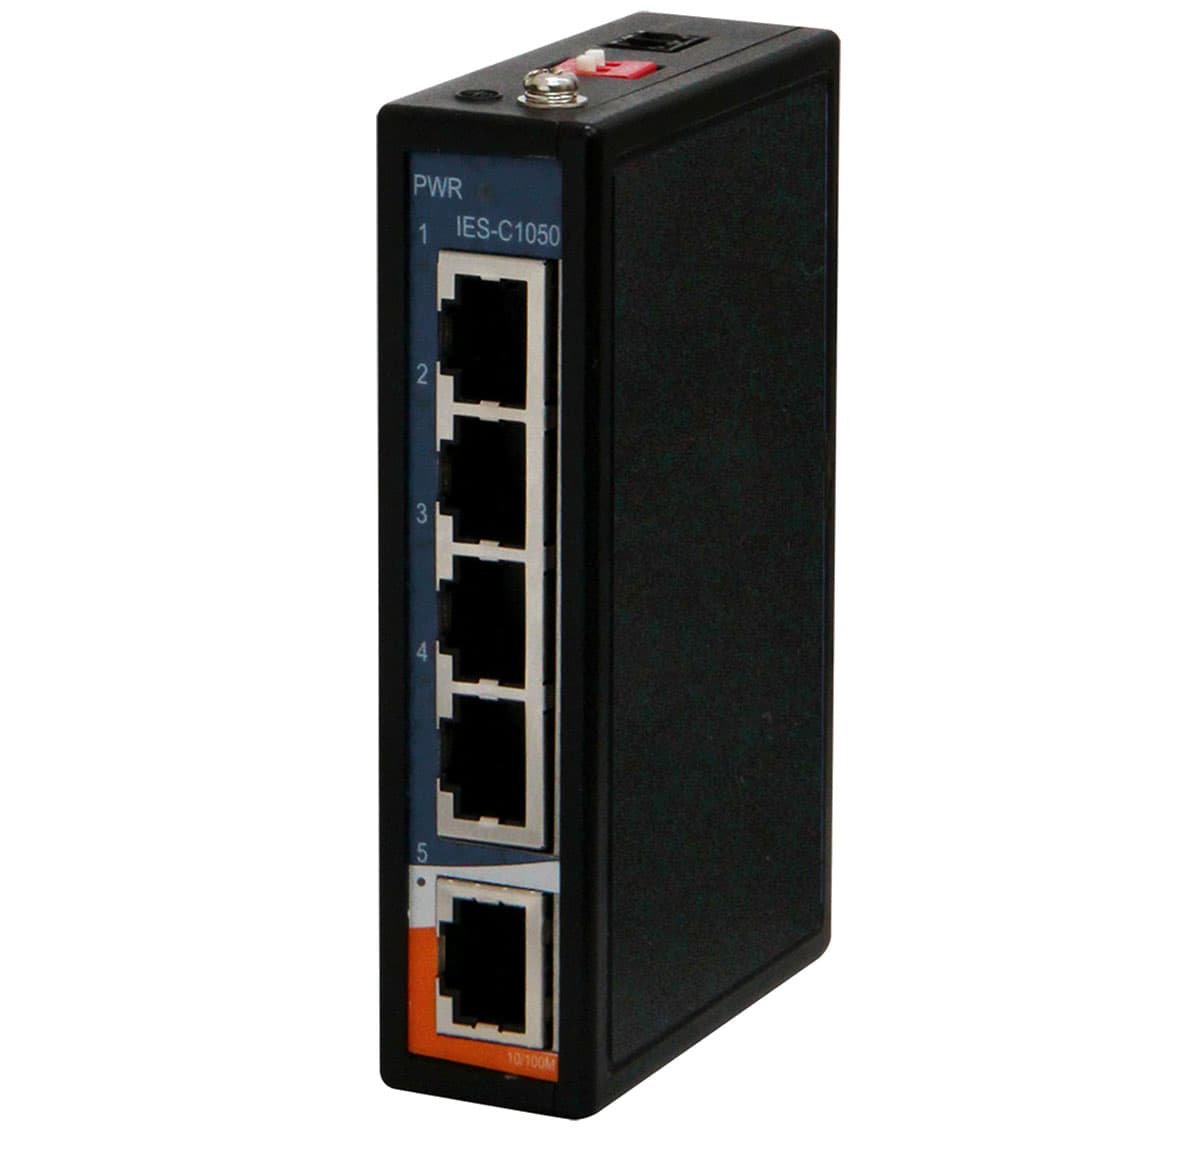 5-fach unmanaged Fast Ethernet Switch für den industriellen Einsatz